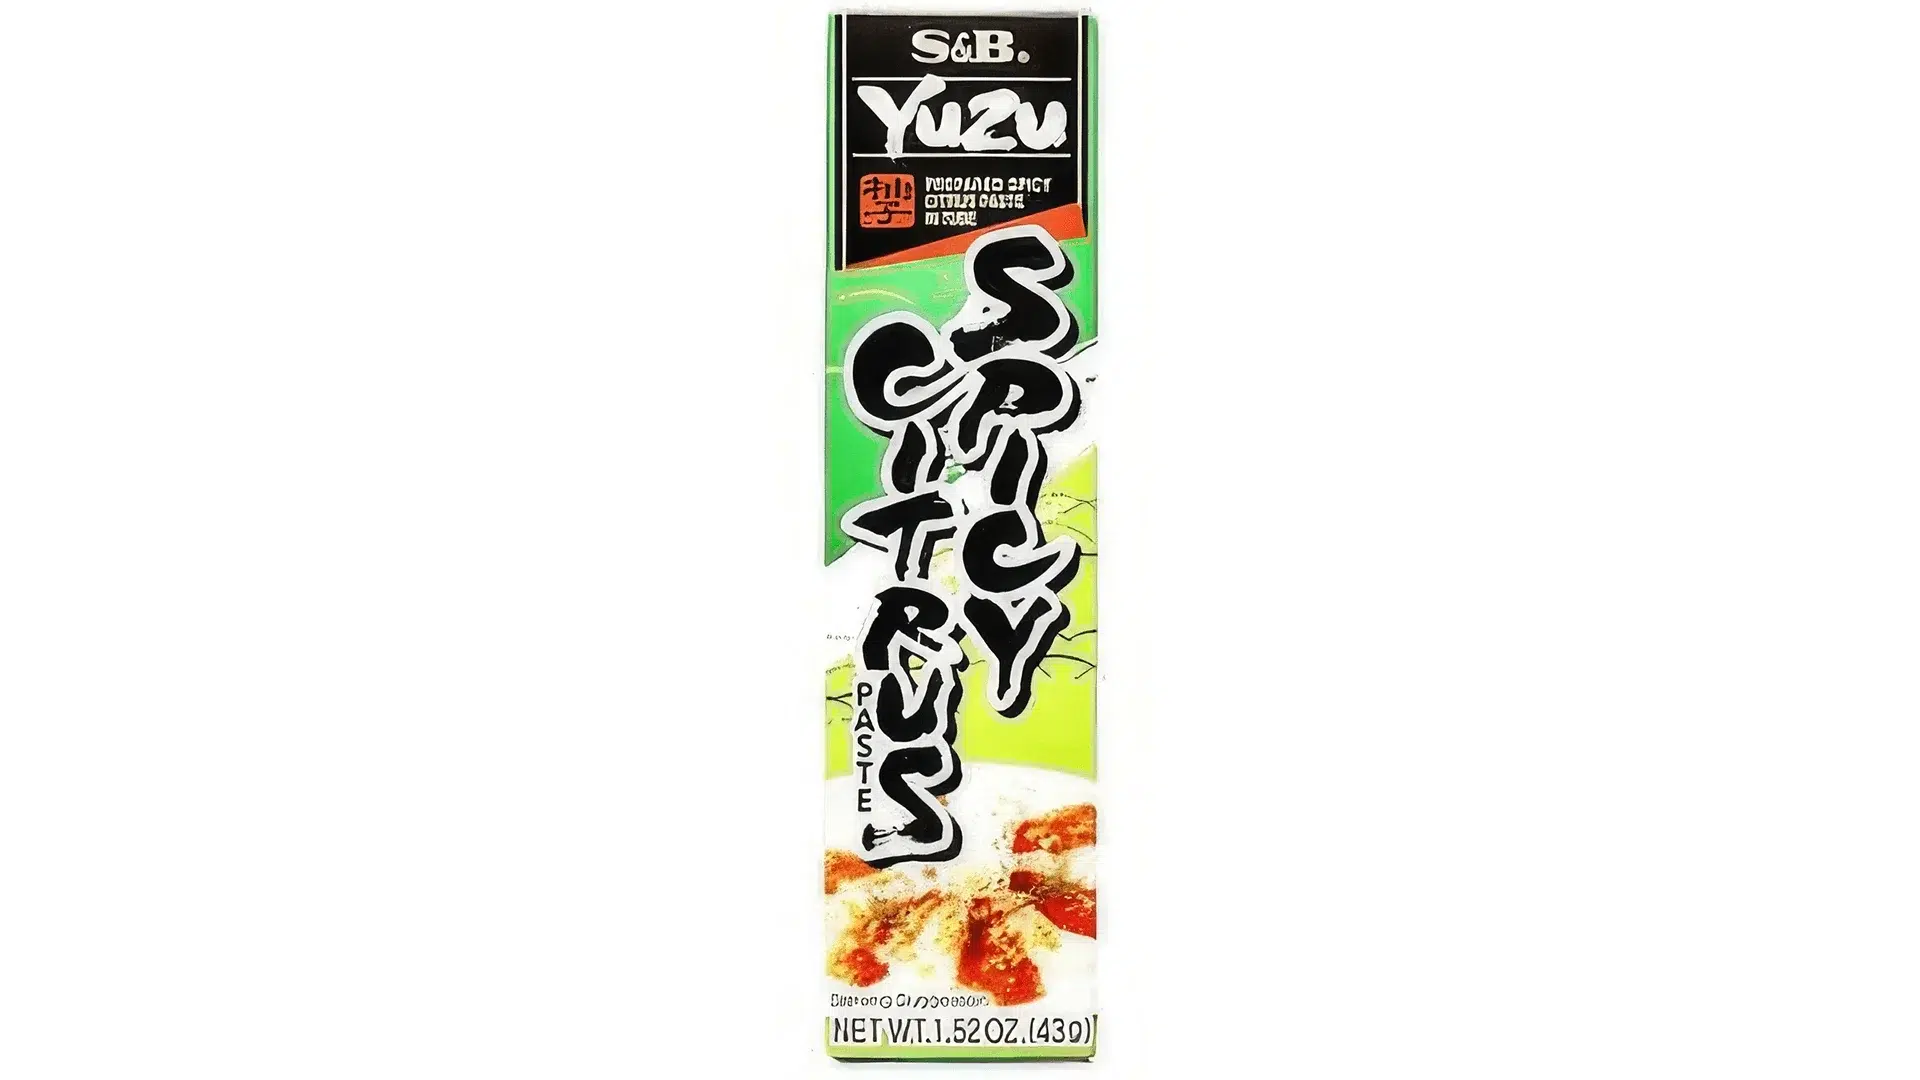 Yuzu Kosho Spicy Citrus Paste